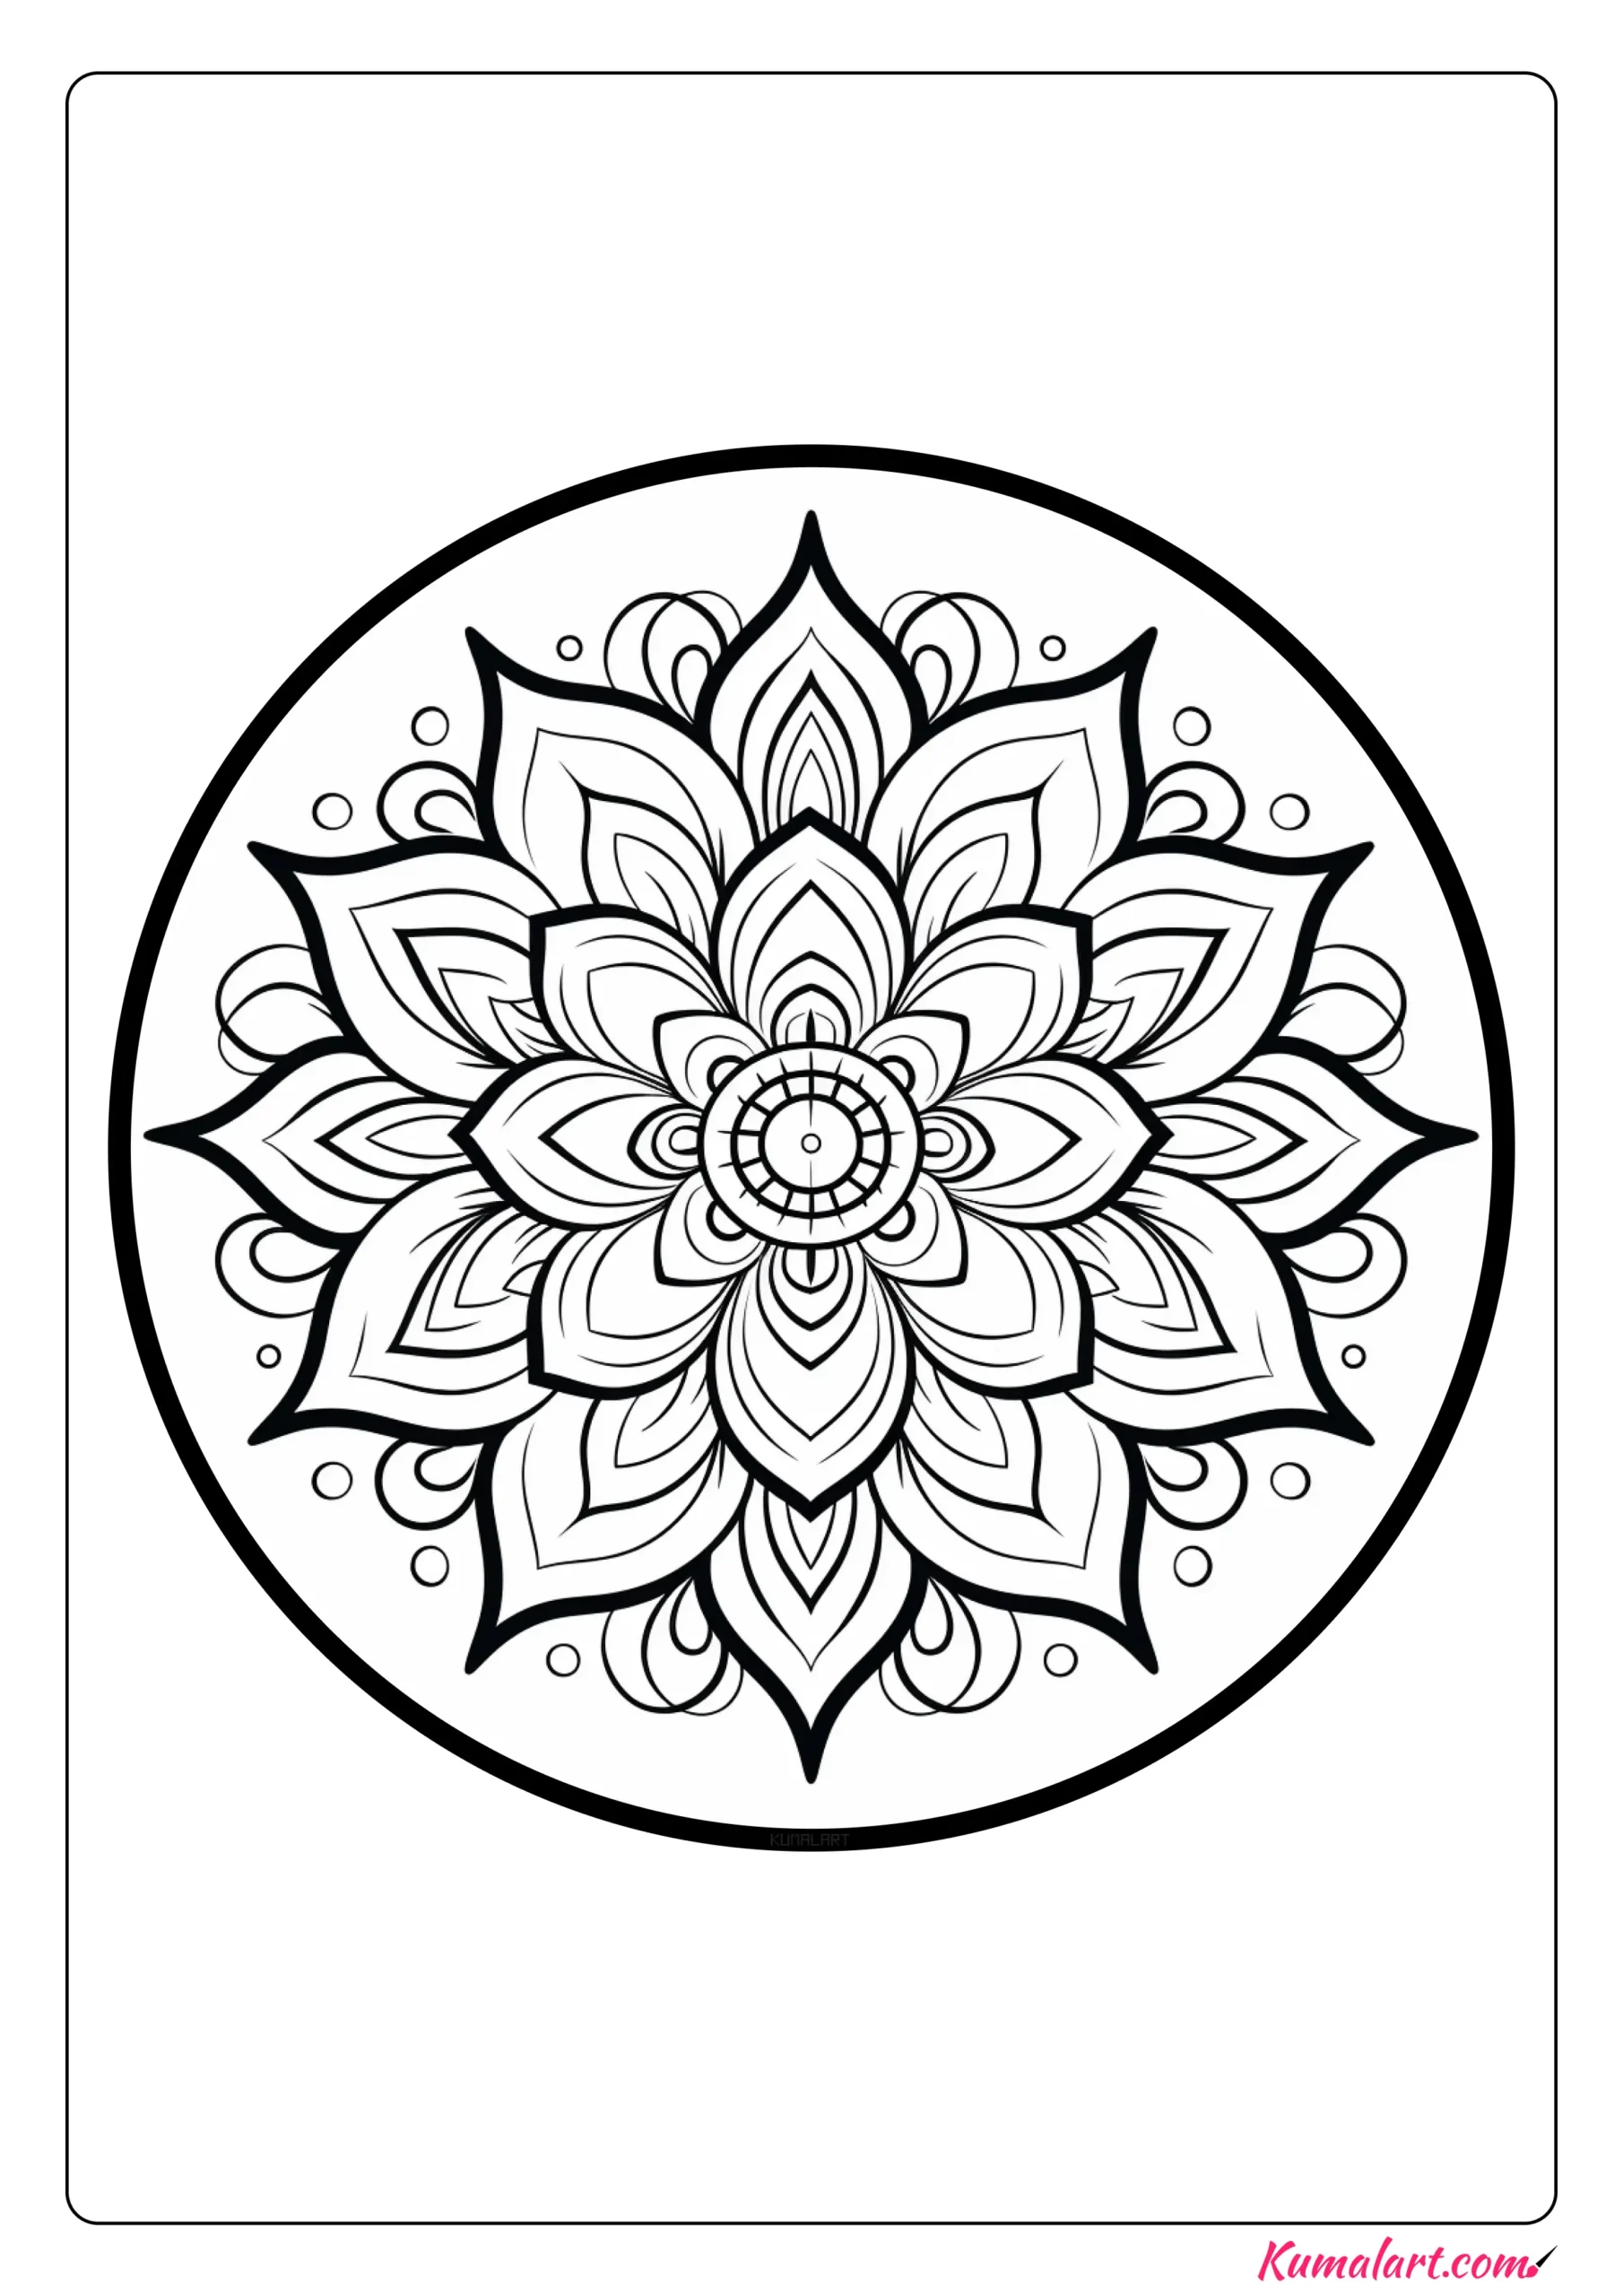 Buddhism Lotus Flower Mandala Coloring Page